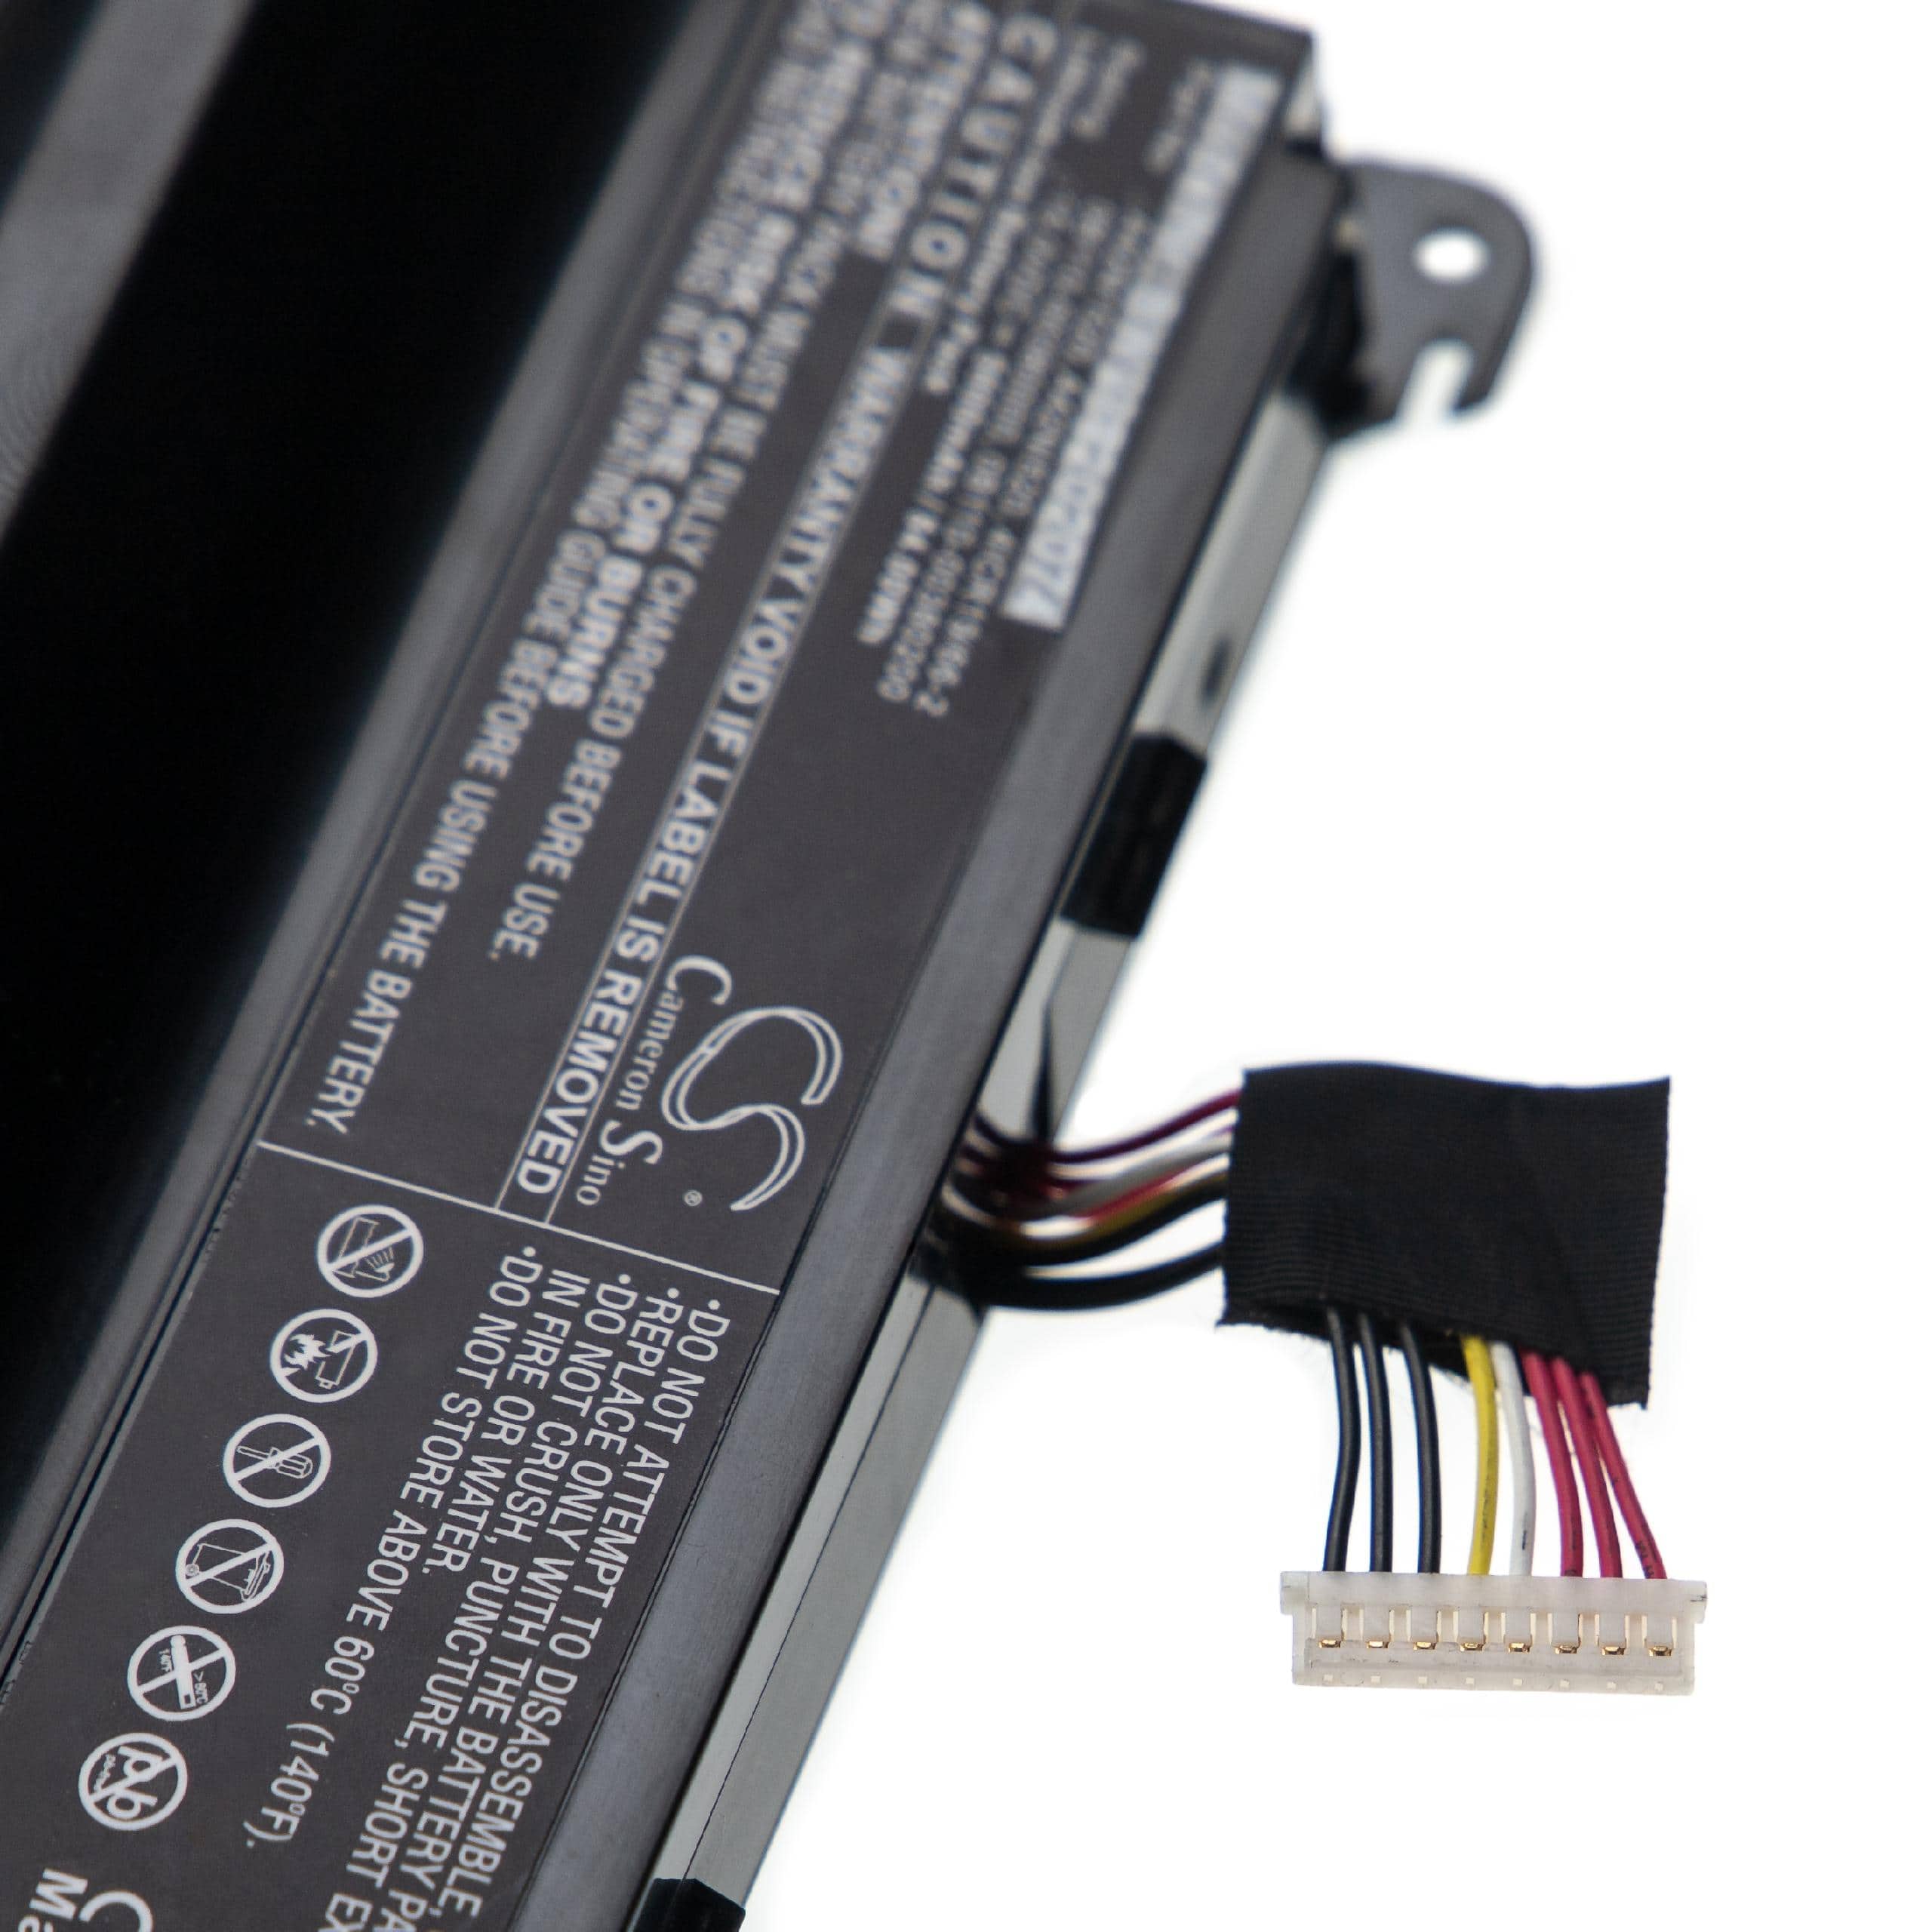 Batería reemplaza Asus 0B110-00380200, 0B110-00380000 para notebook Asus - 5600 mAh 15 V Li-Ion negro